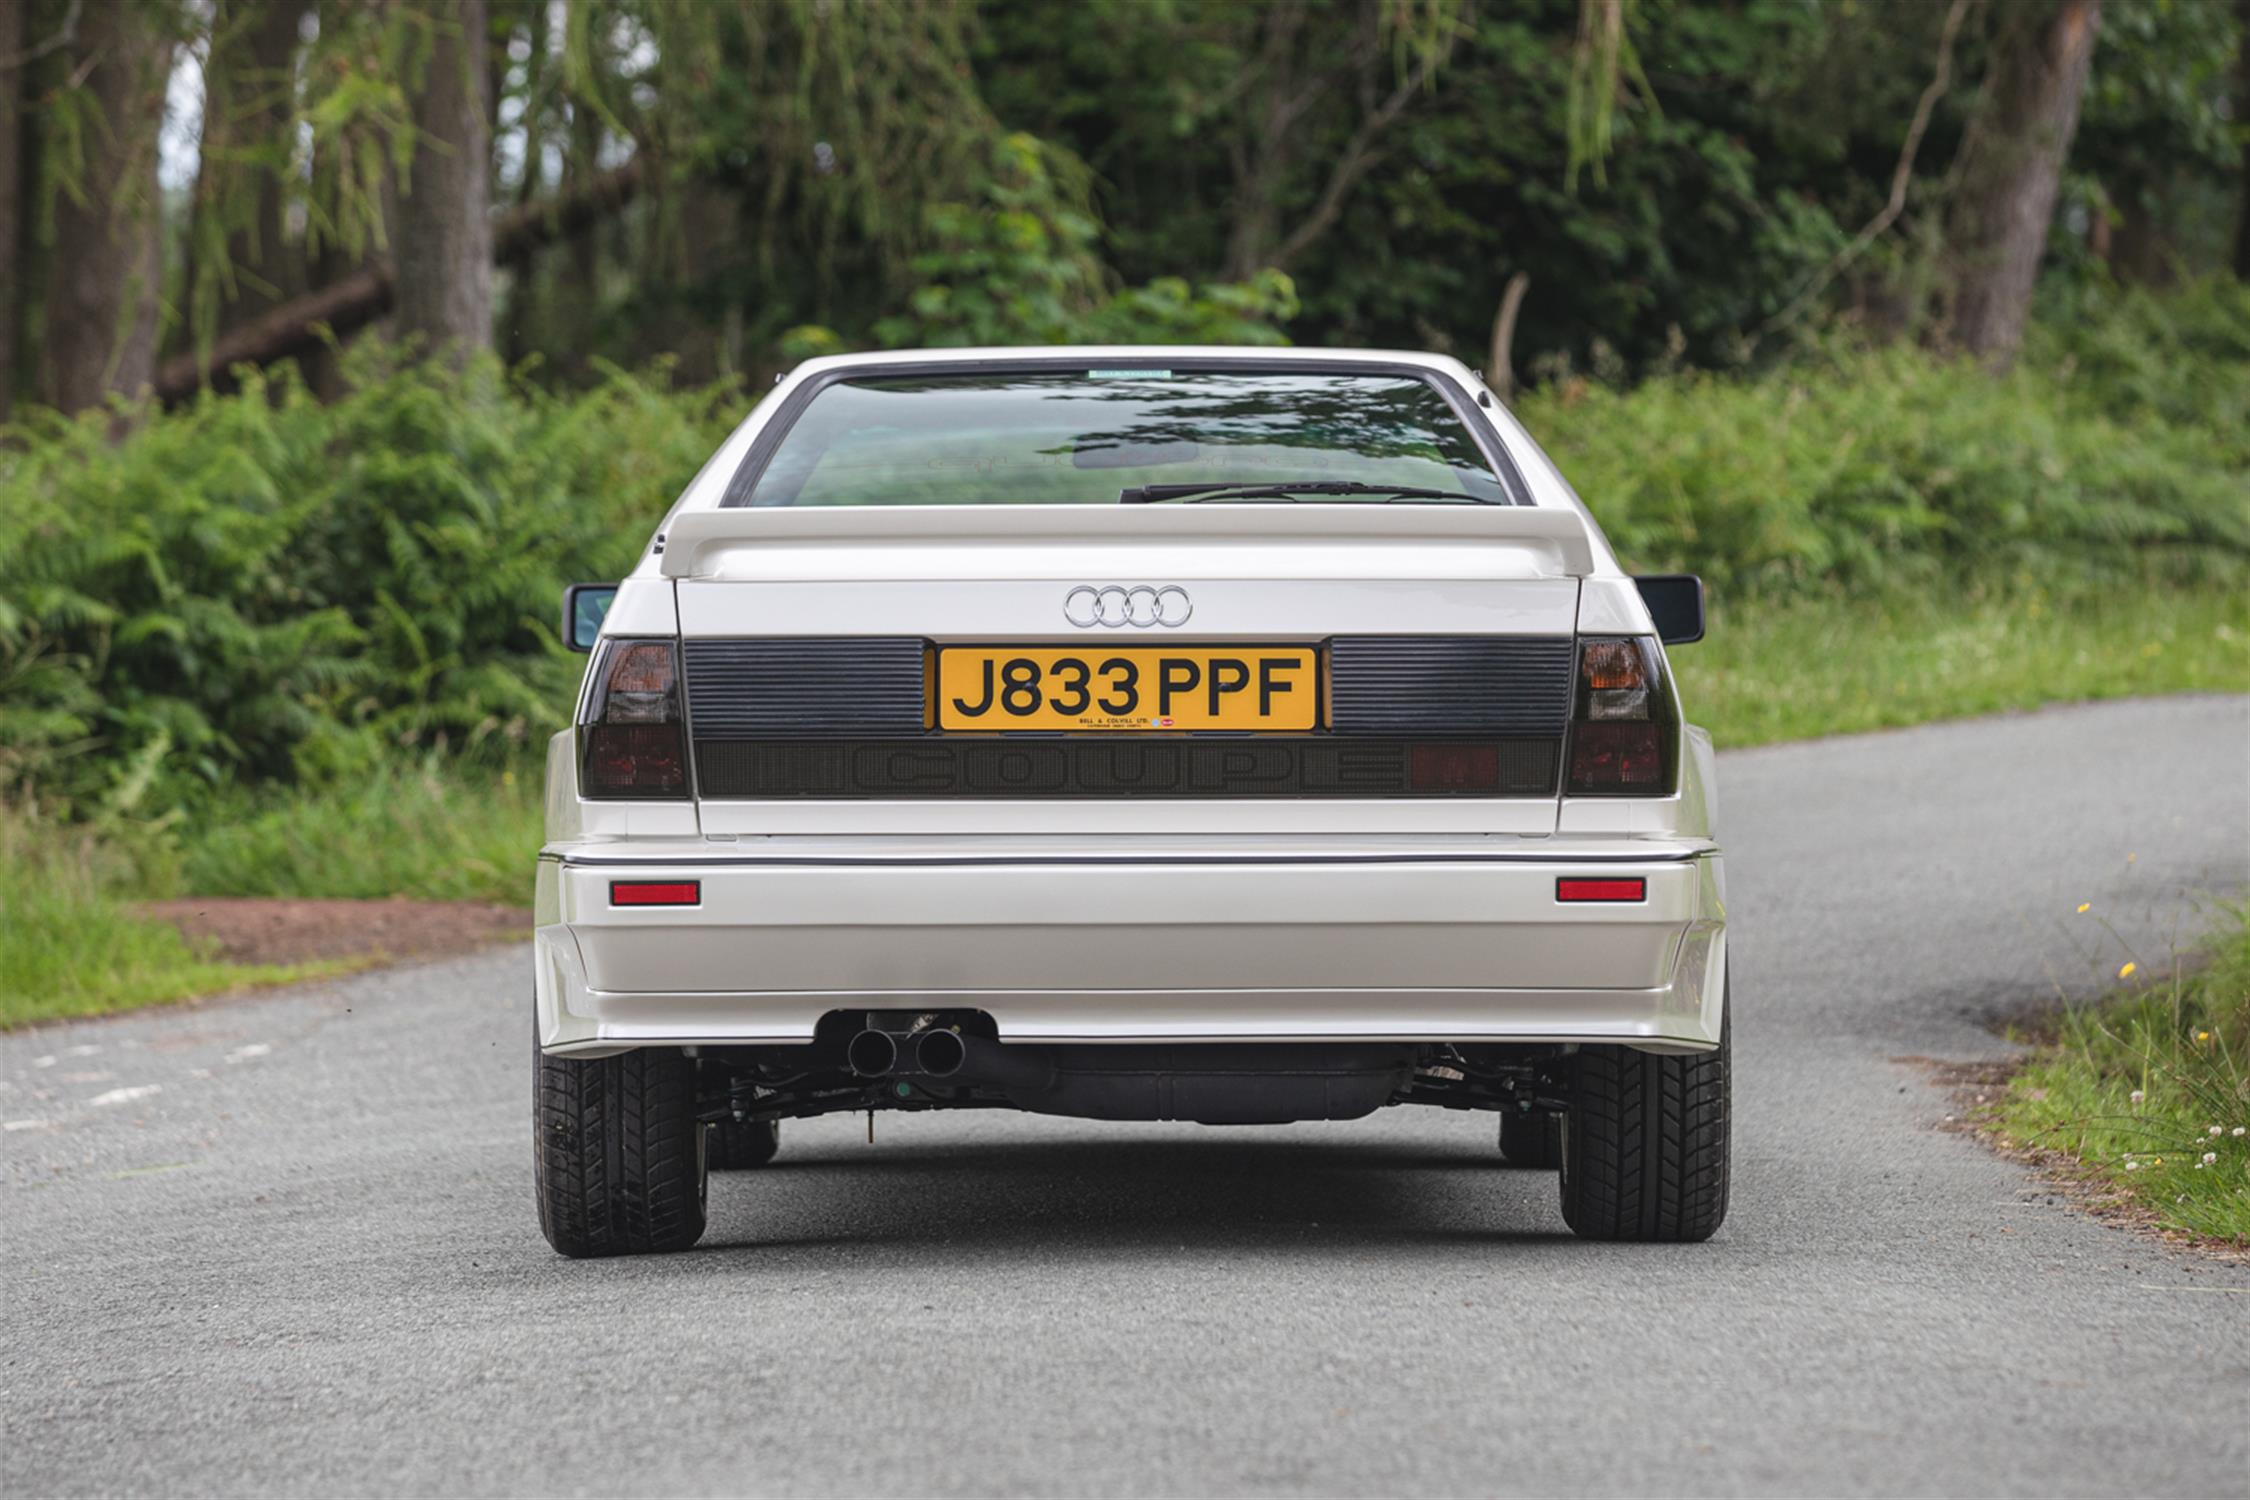 1991 Audi Ur-Quattro 20V (RR) - Image 7 of 10